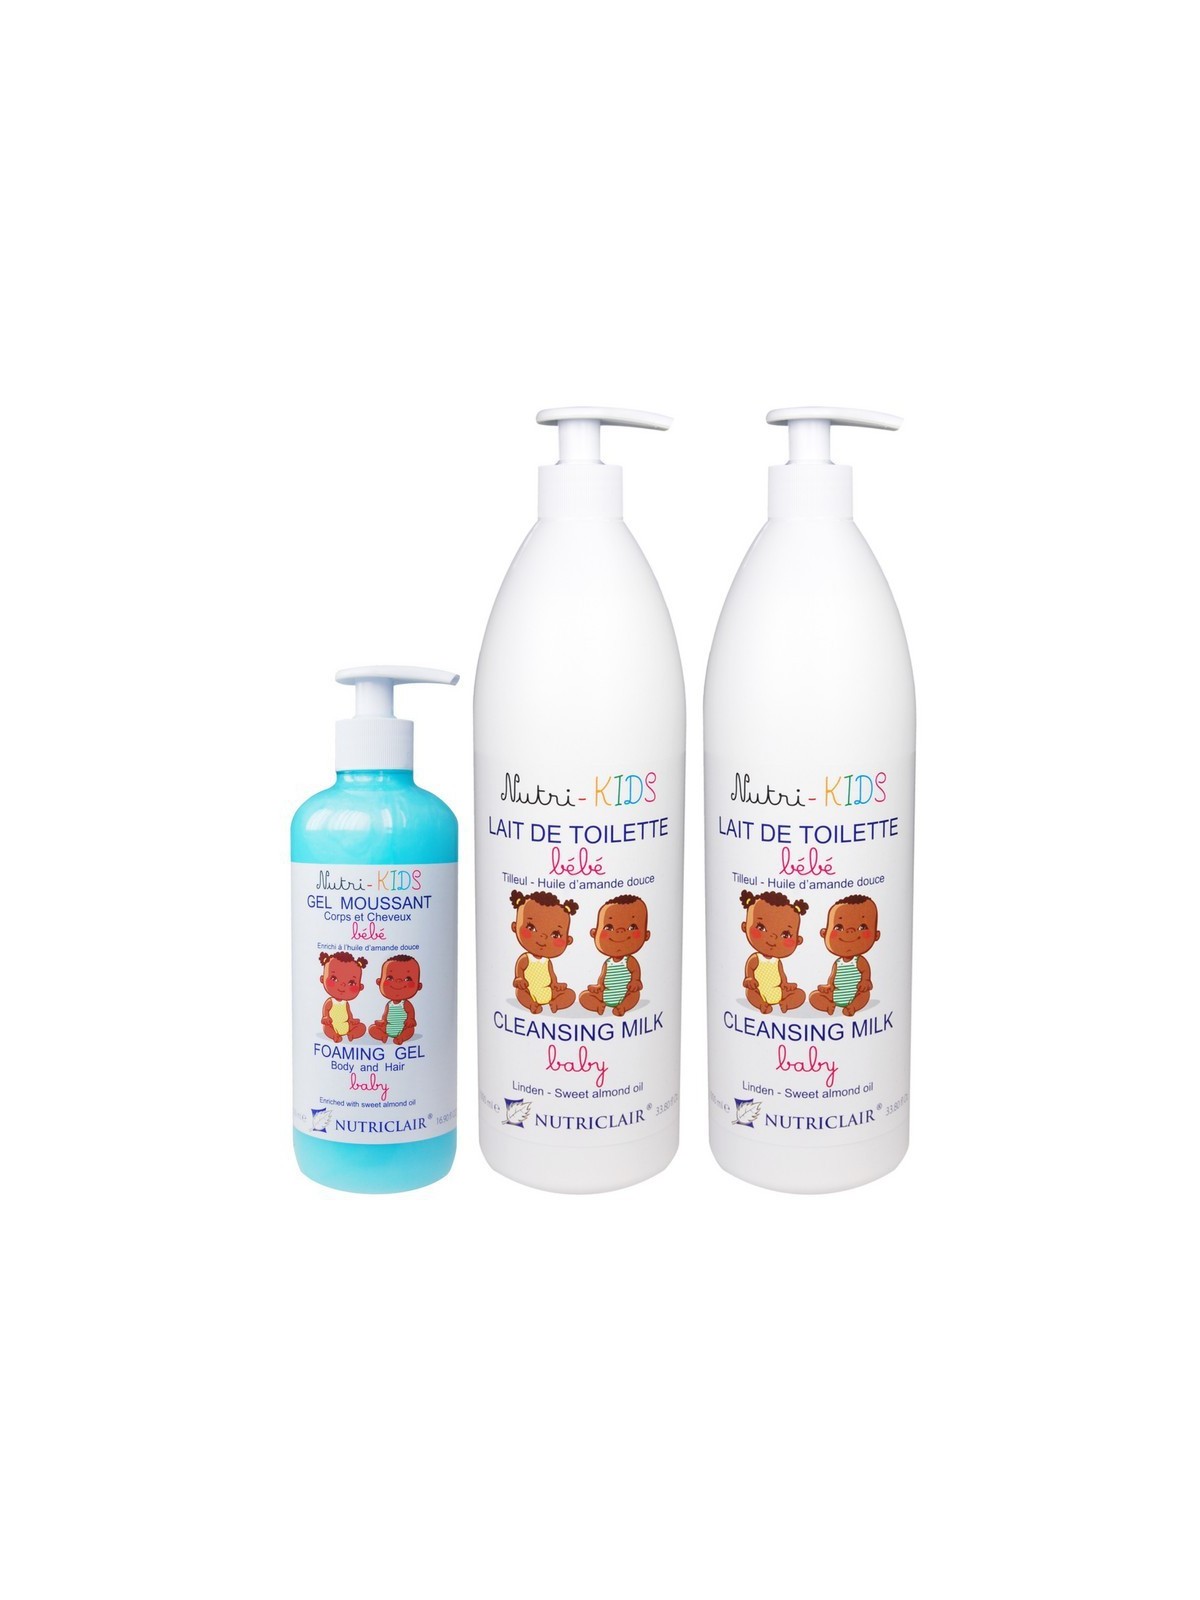 Baby pack toilet milk x2 and nutri-kids foaming gel from NUTRICLAIR